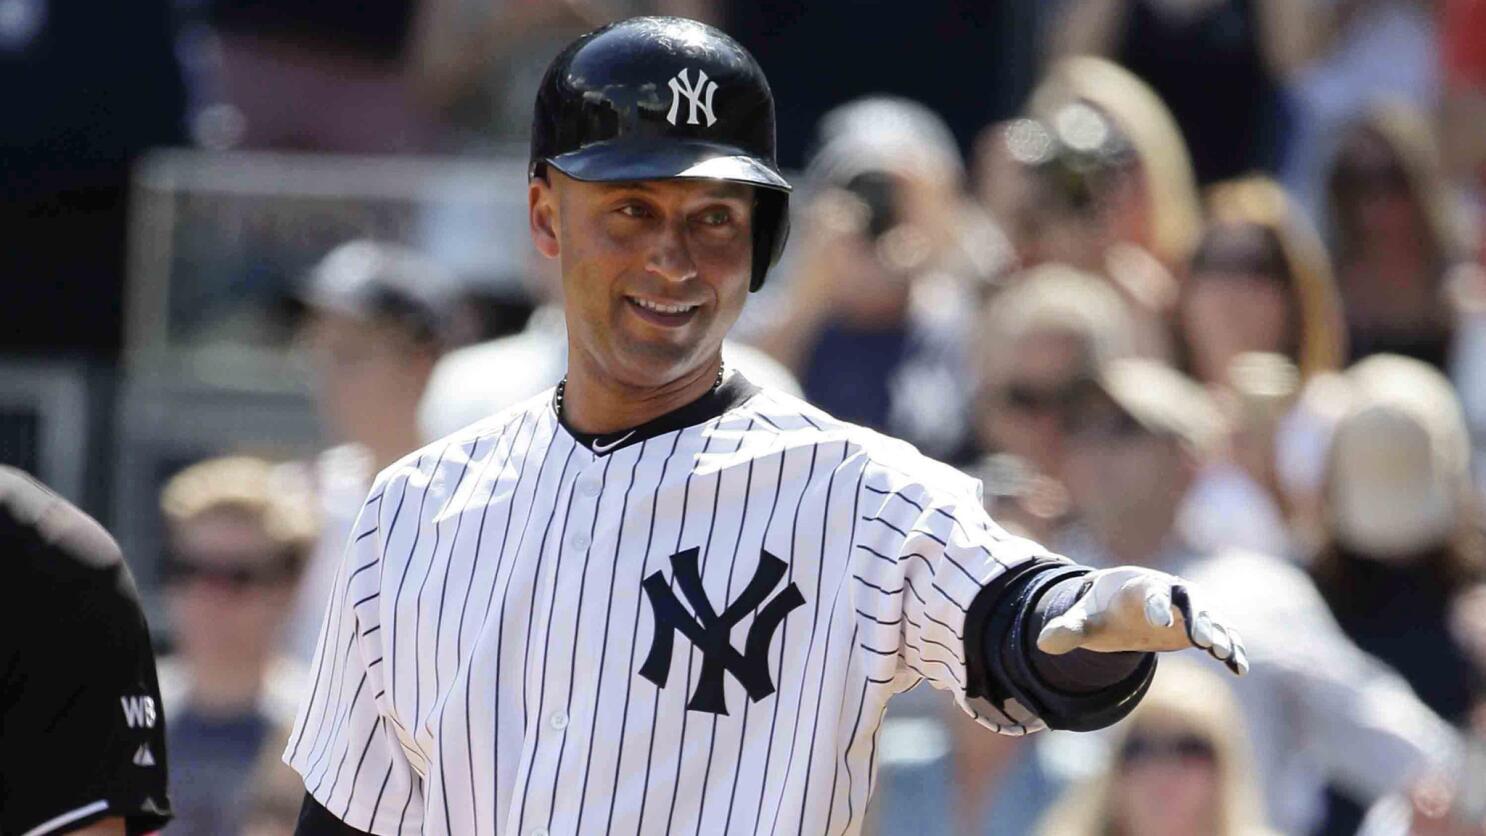 Yankees honor the Captain on Derek Jeter Day in 2014 